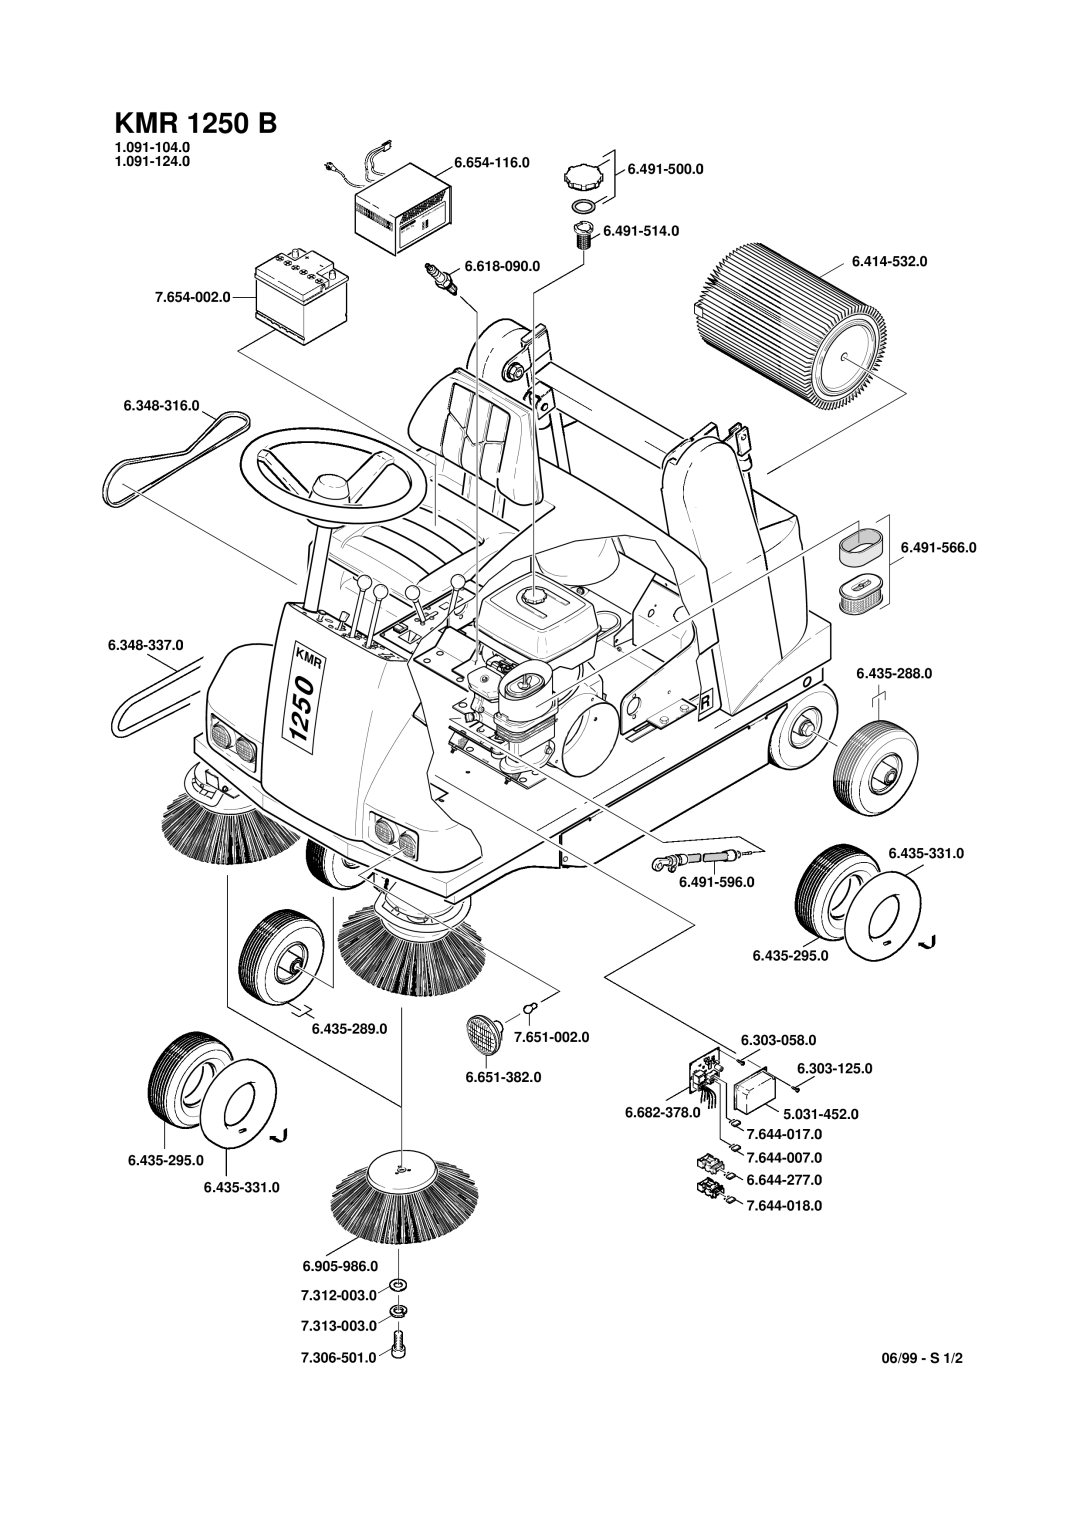 Karcher KMR 1250 B manual 